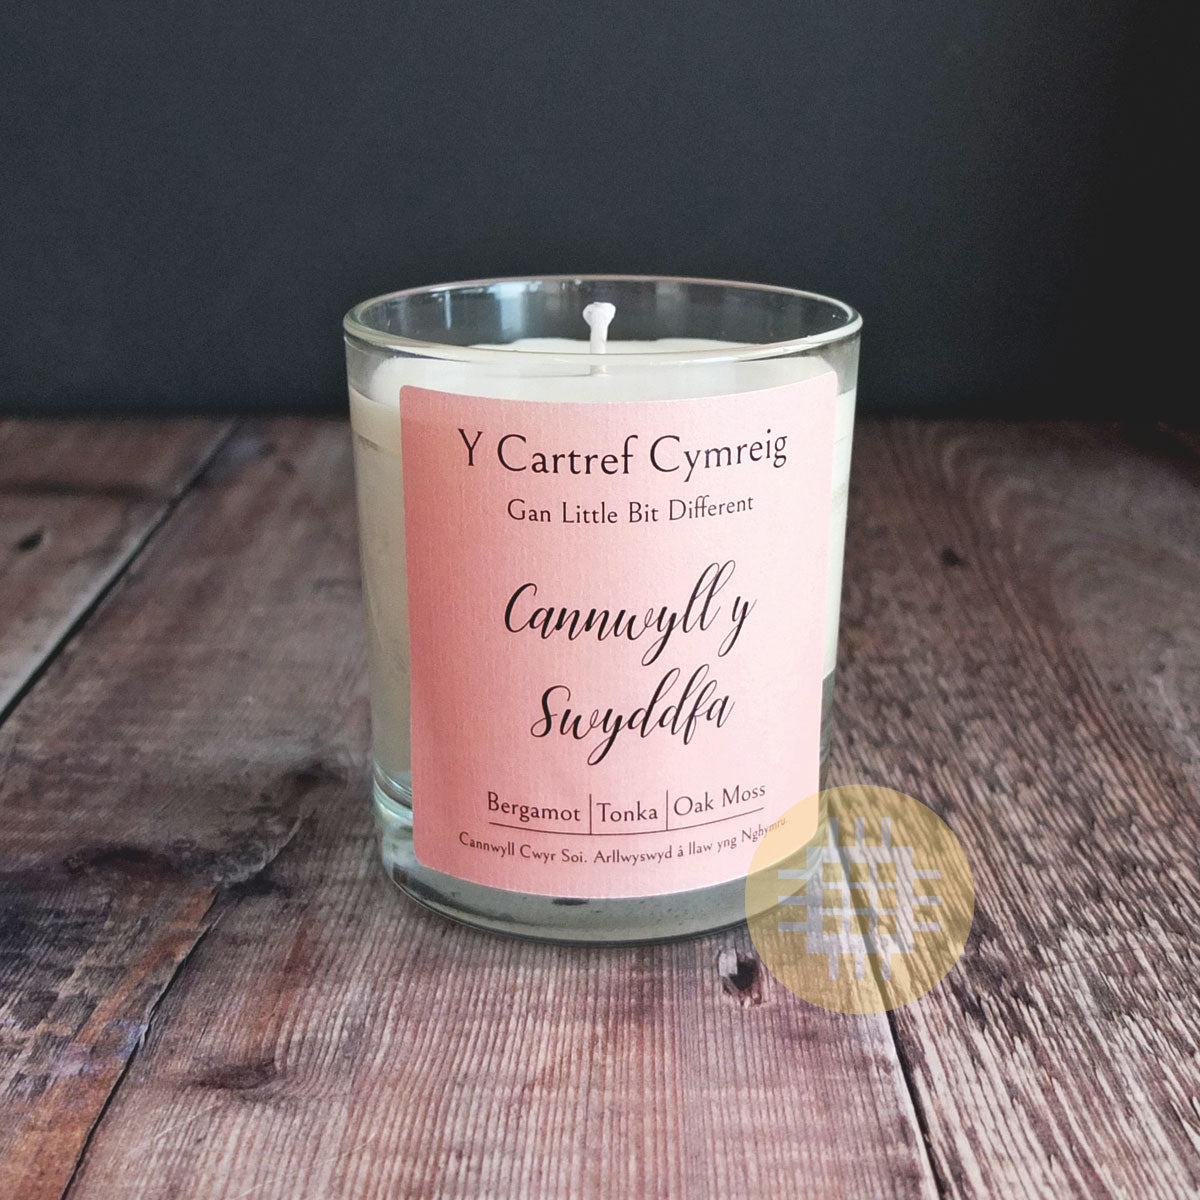 Cannwyll y Swyddfa Welsh Candle